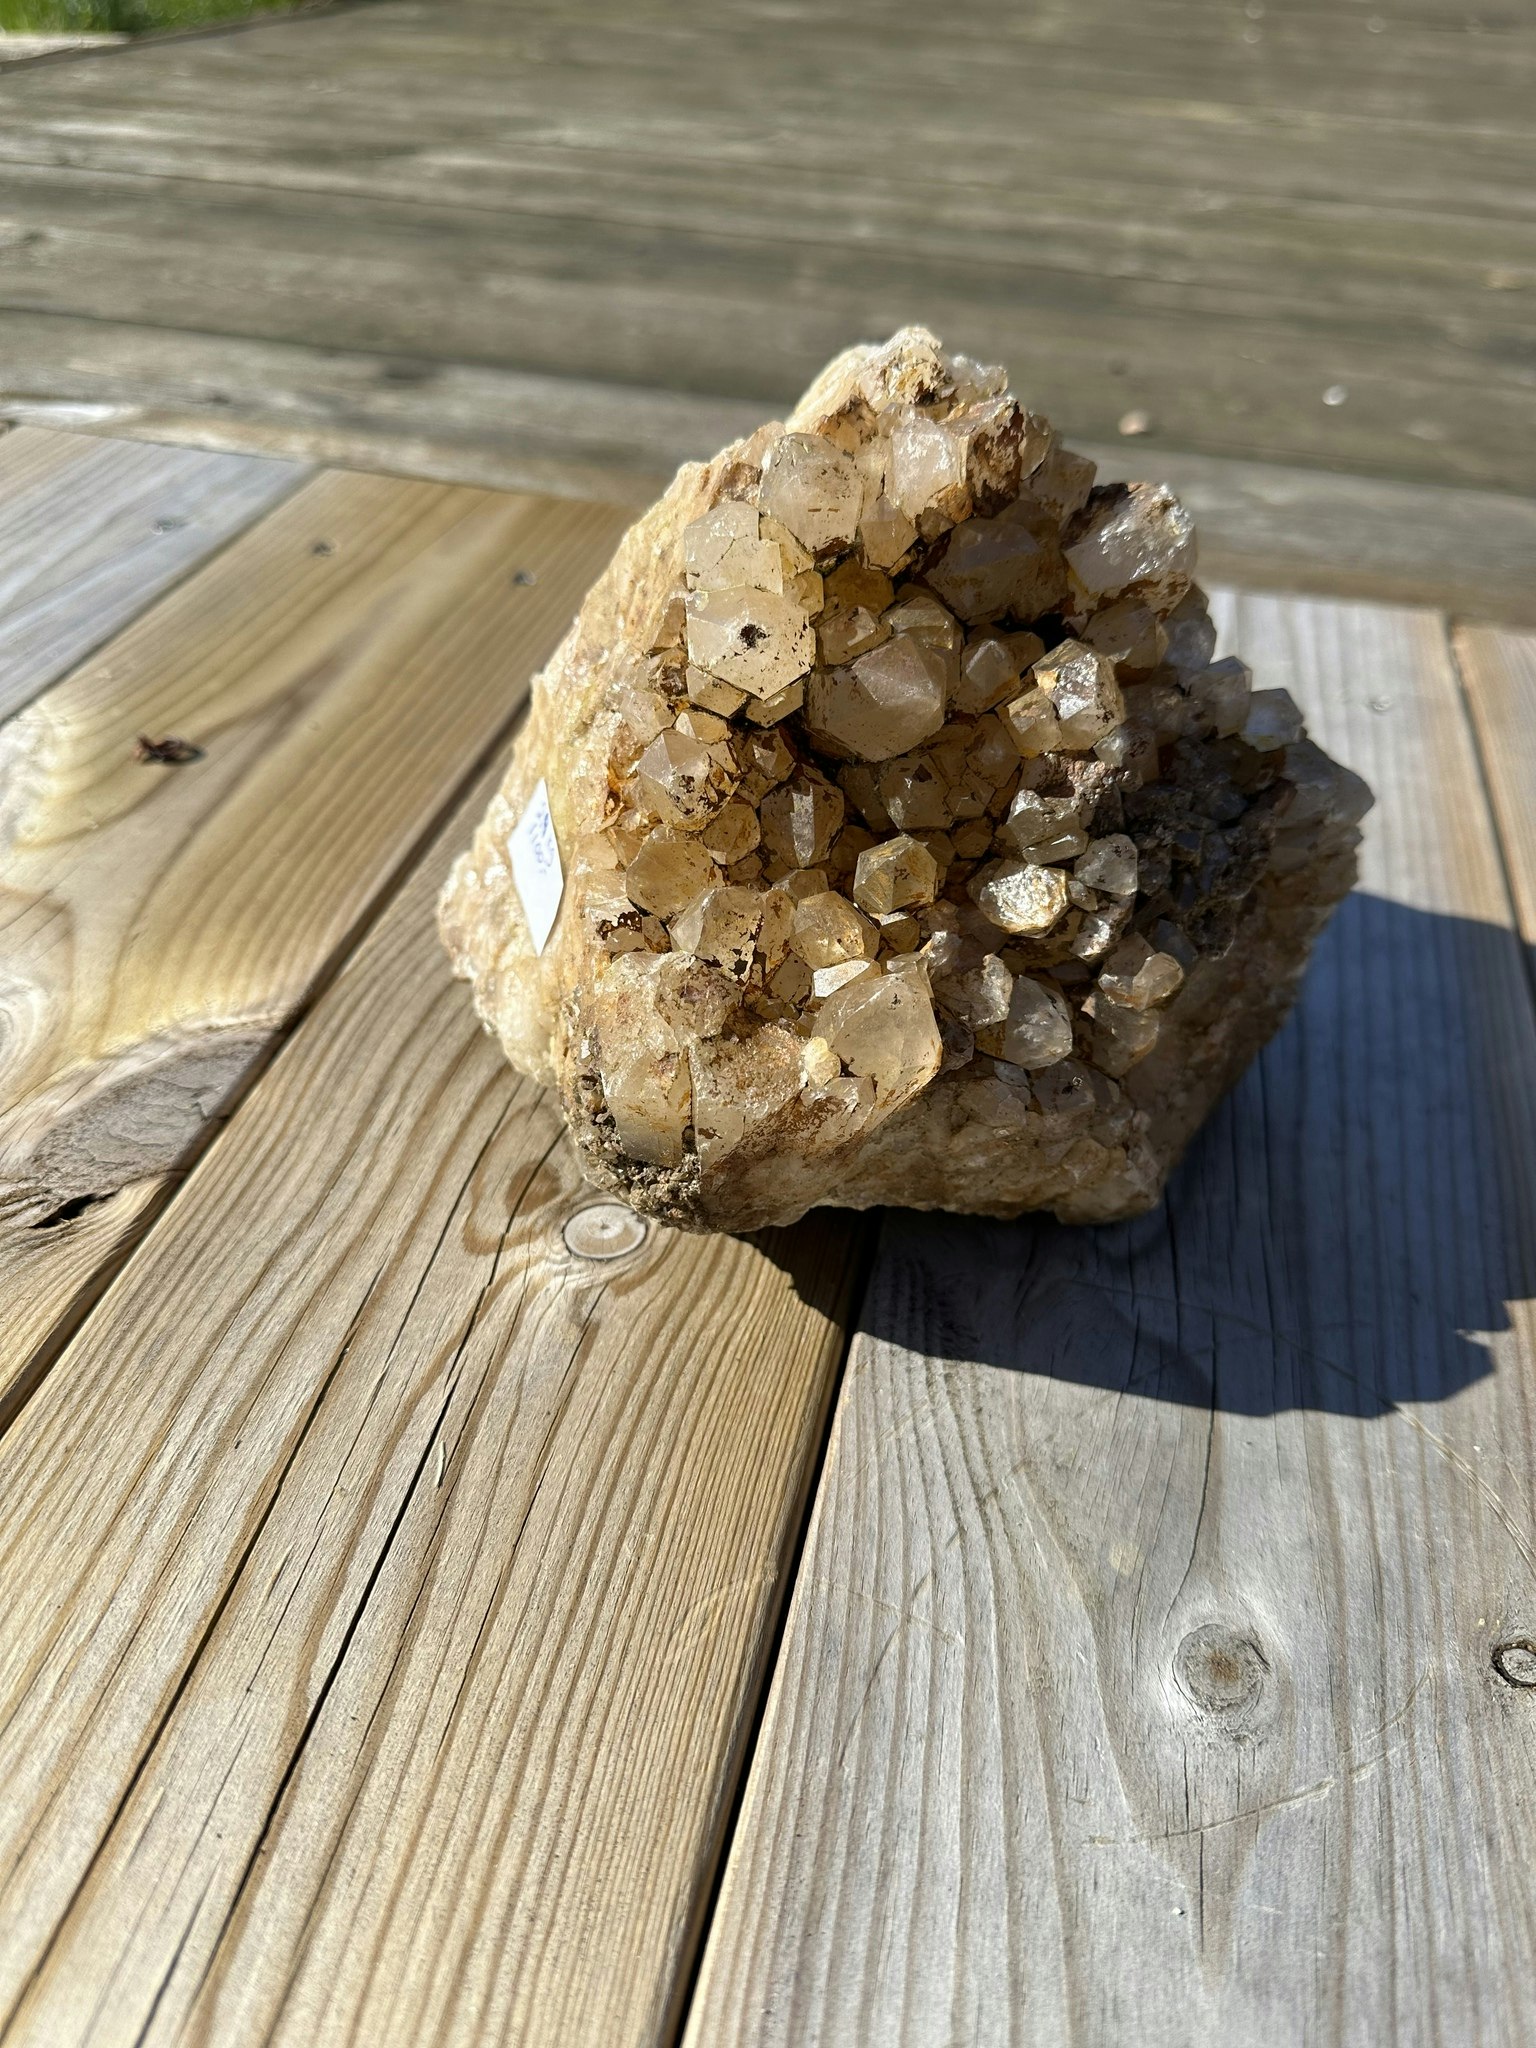 Bergkristall från Sverige, Dalsland